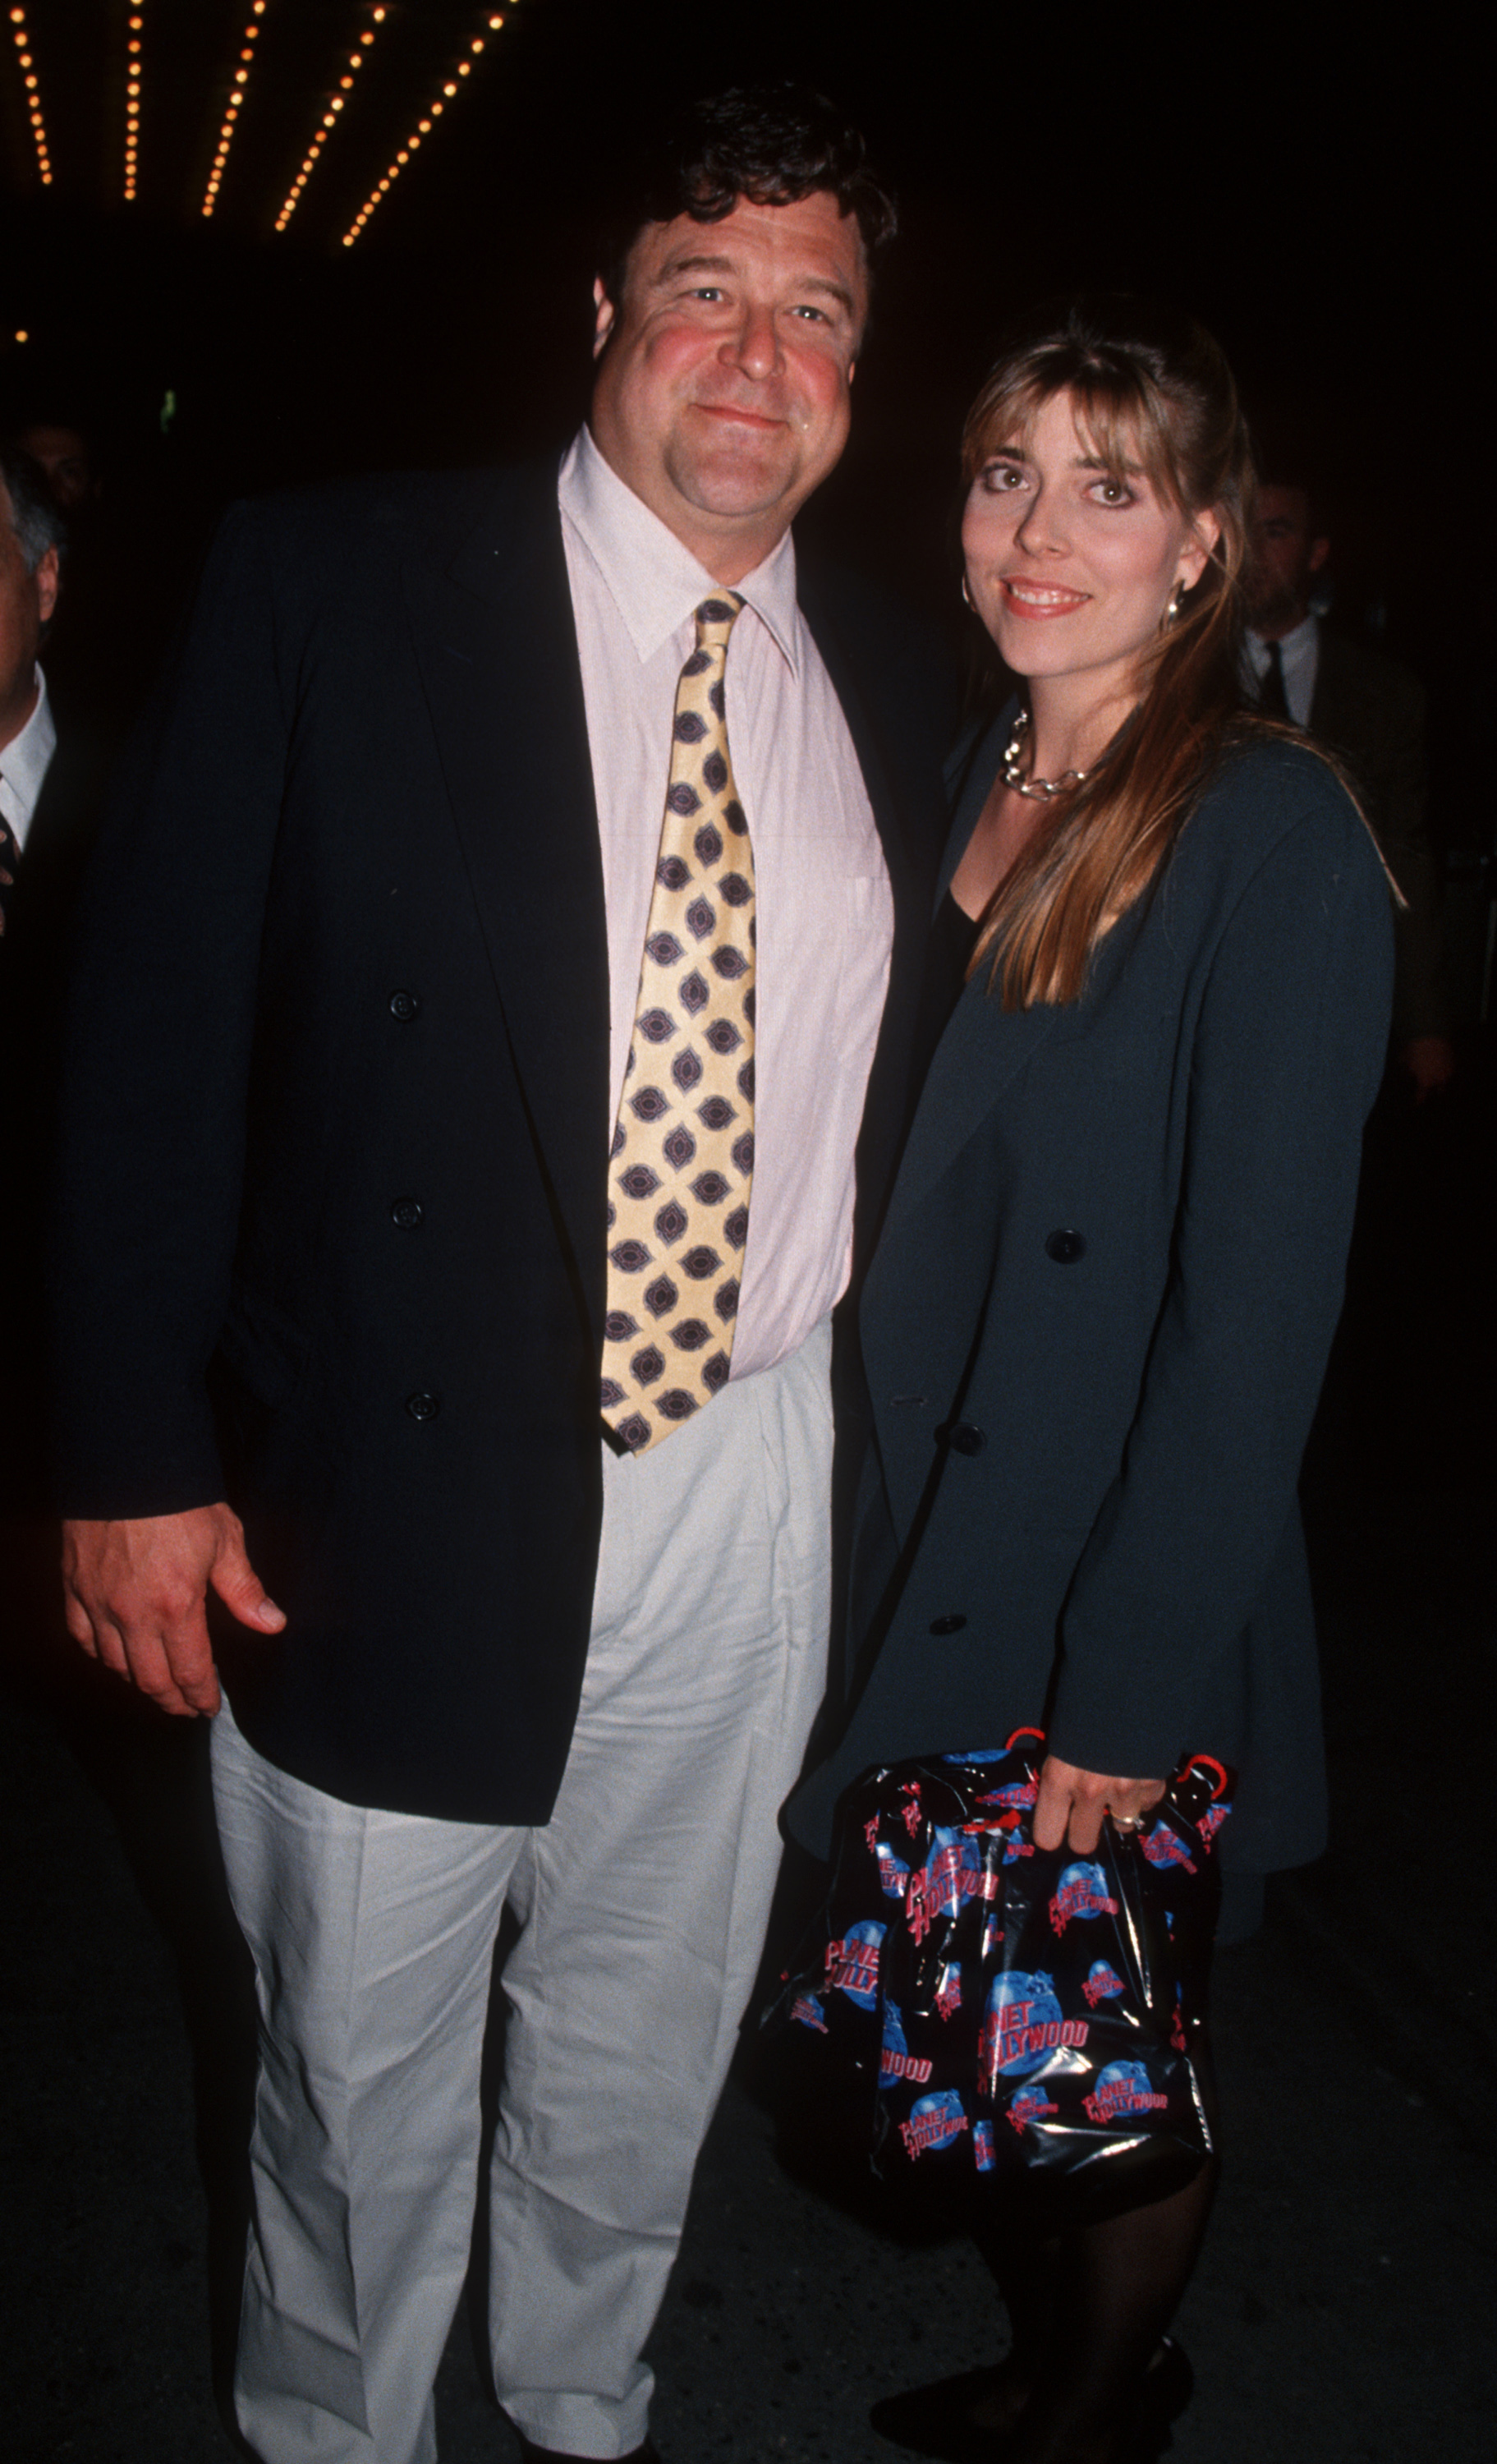 John Goodman und seine Frau Anna Beth Hartzog besuchen die Premiere von "The Flintstones" am 23. Mai 1994 im Ziegfeld Theater in New York City, New York. | Quelle: Getty Images